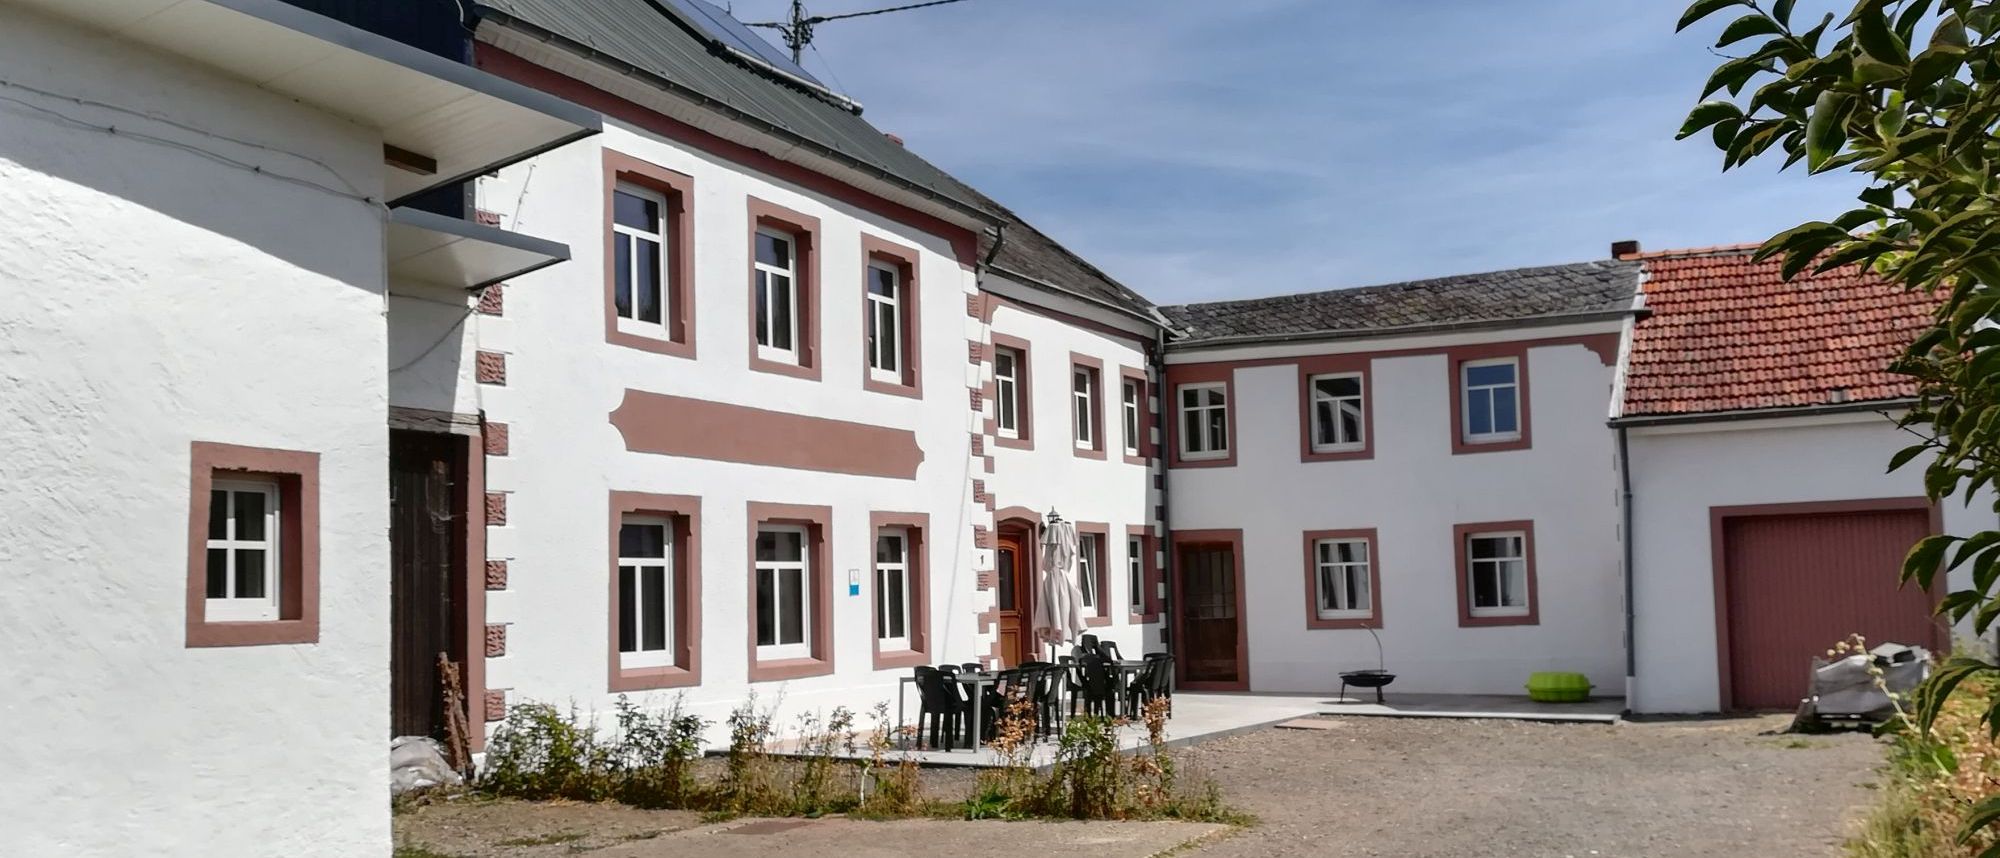 Ferienhaus Rodershausen